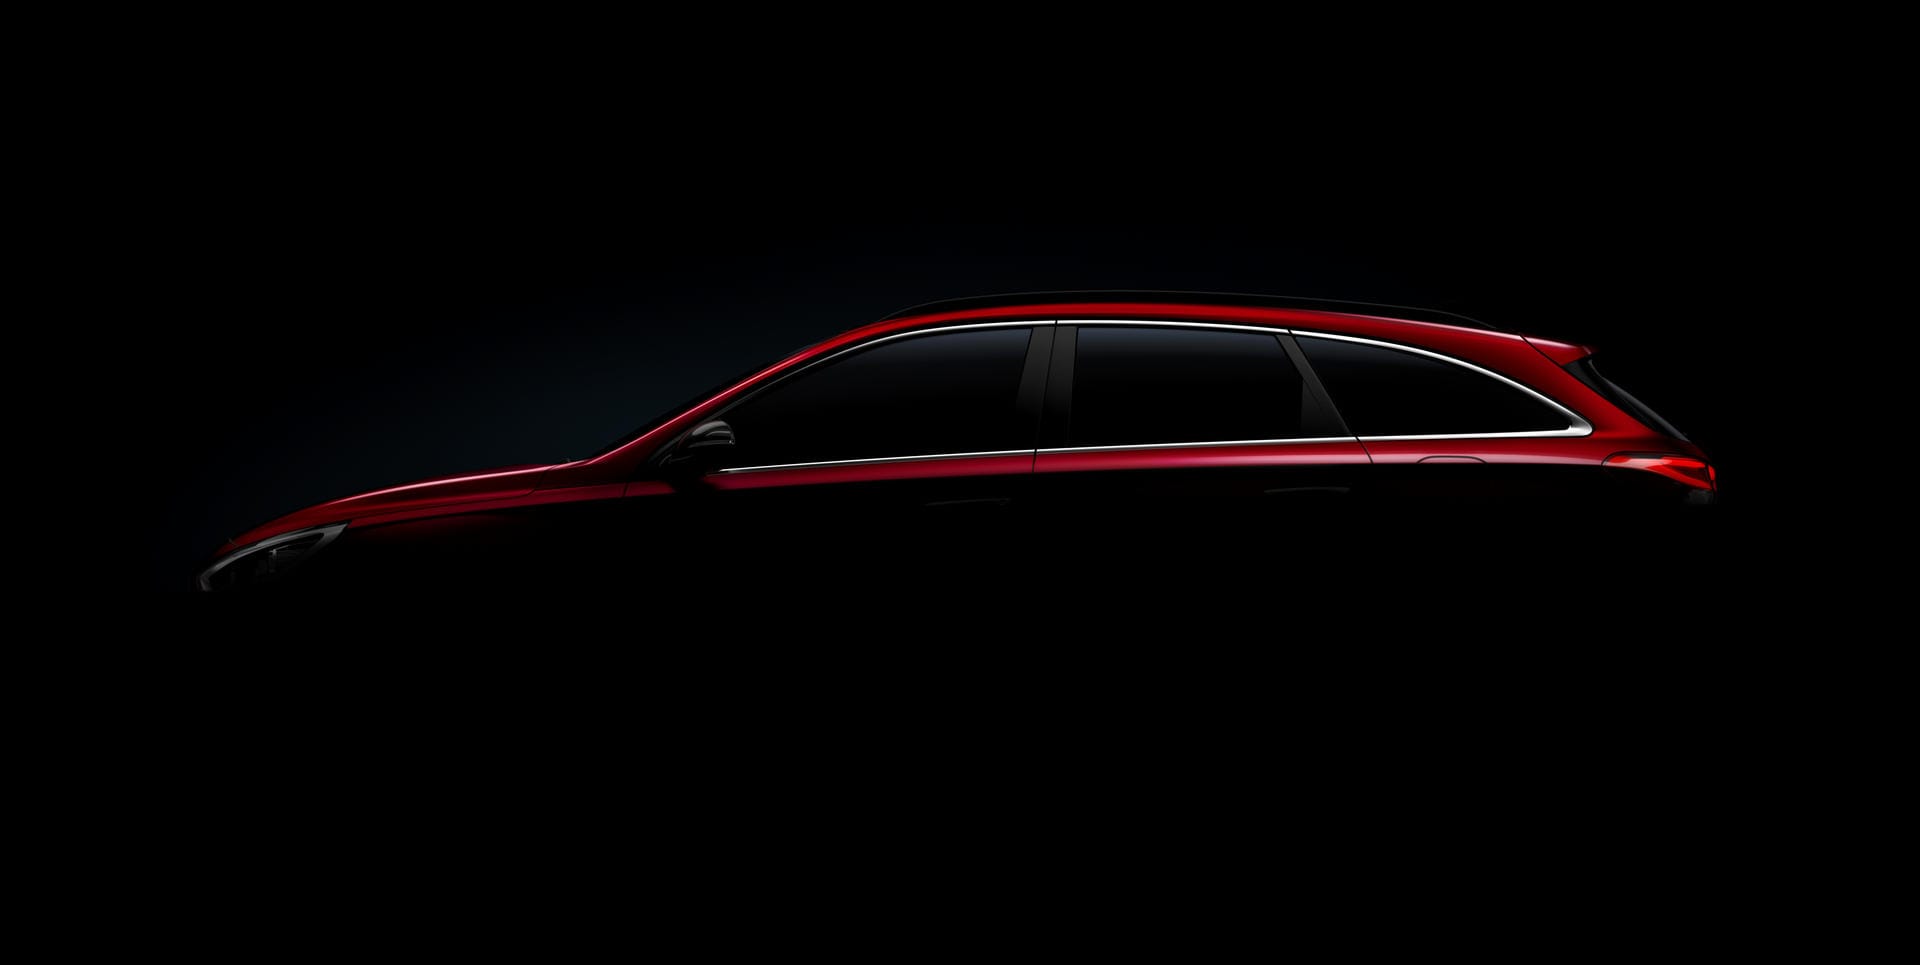 Hyundai gewährt in Genf einen ersten Blick auf den neuen i30 Kombi.